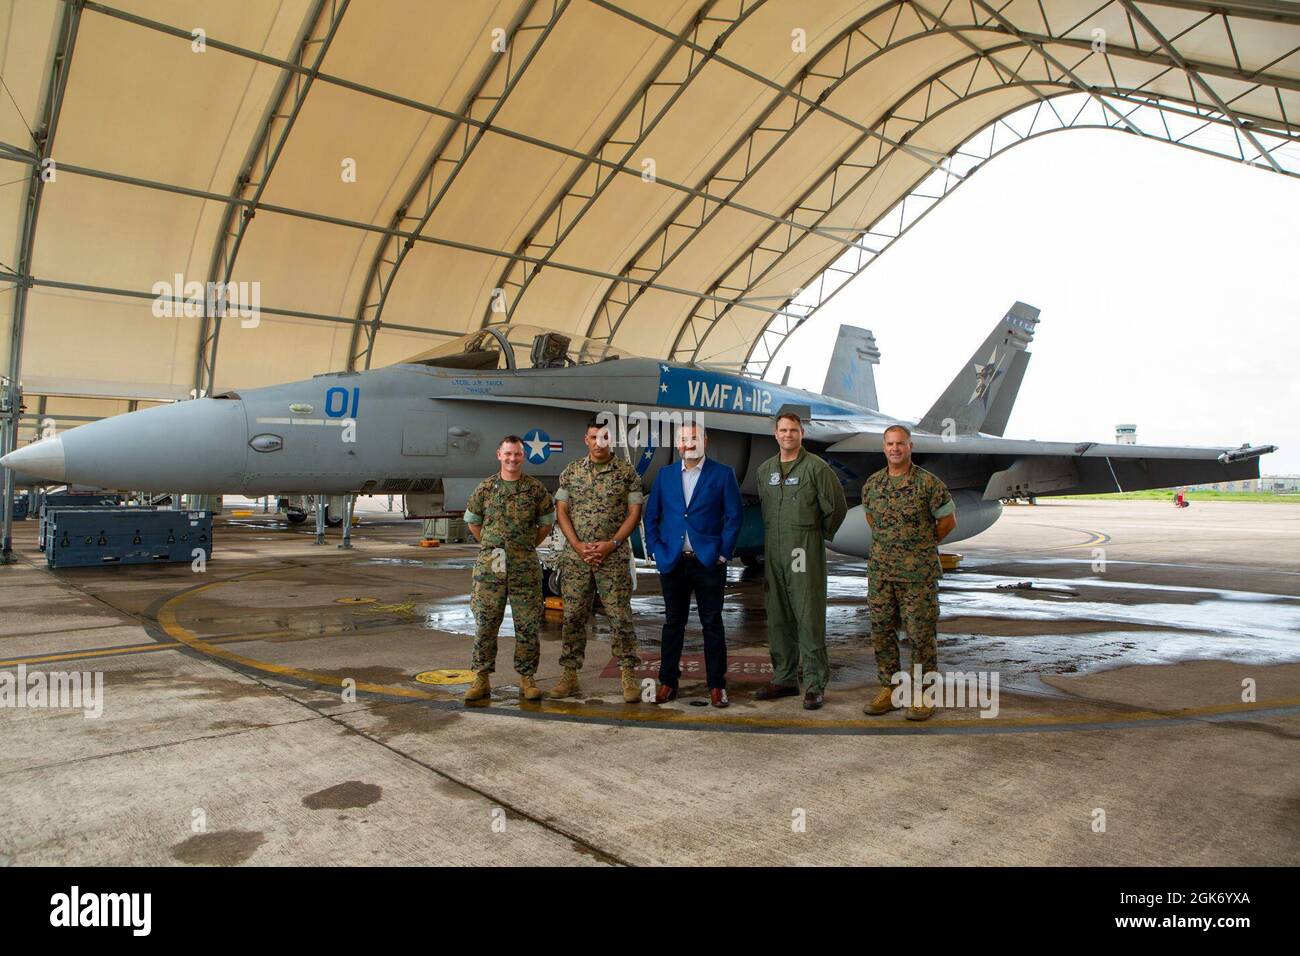 Le sénateur du Texas Ted Cruz visite le Marine Fighter Attack Squadron 112 (VMFA-112), Marine Aircraft Group 41, 4e Escadre Marine Aircraft, un escadron de la Réserve du corps marin basé au Texas à bord de la base de la Réserve interarmées de la base aérienne navale de fort Worth, le 19 août 2021. Banque D'Images